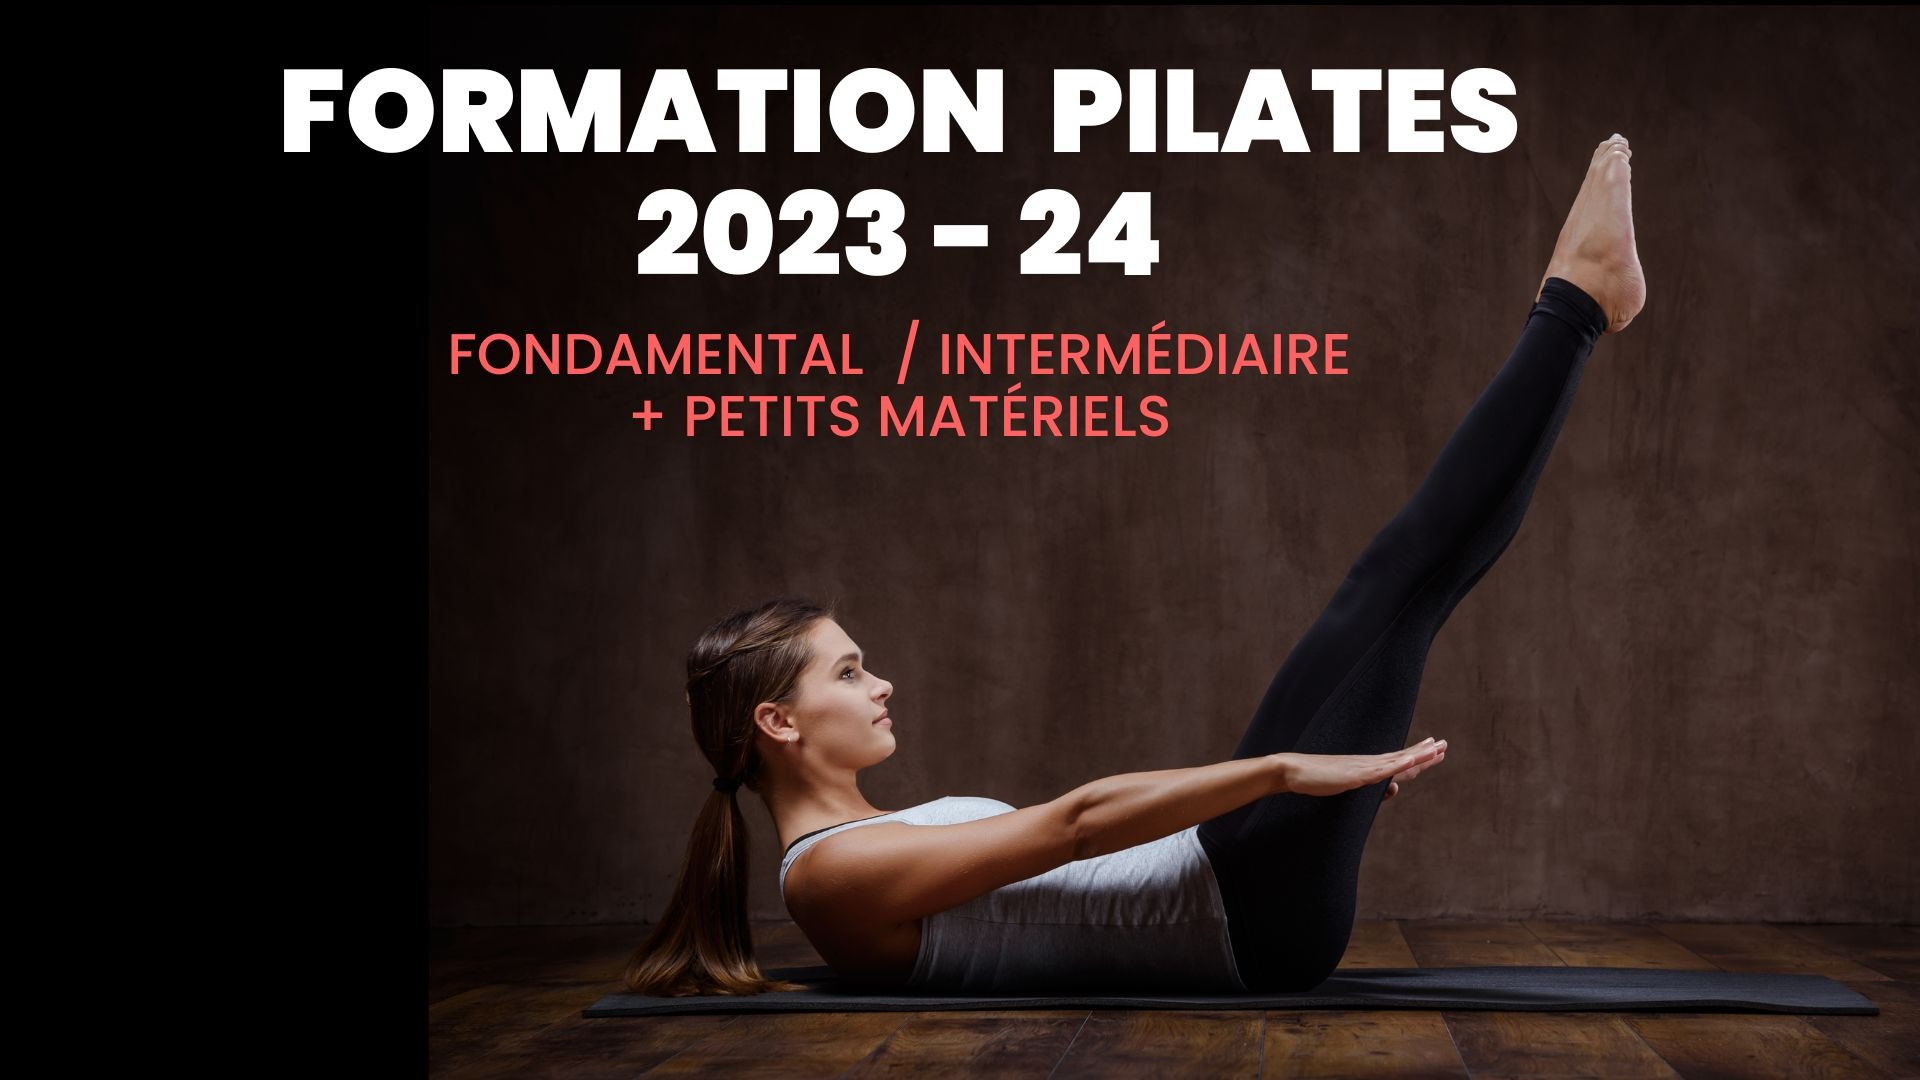 Représentation de la formation : FORMATION Pilates 2023 - 24. 
Fascia Pilates Somatique (niv 1 / 2 + petits matériels)